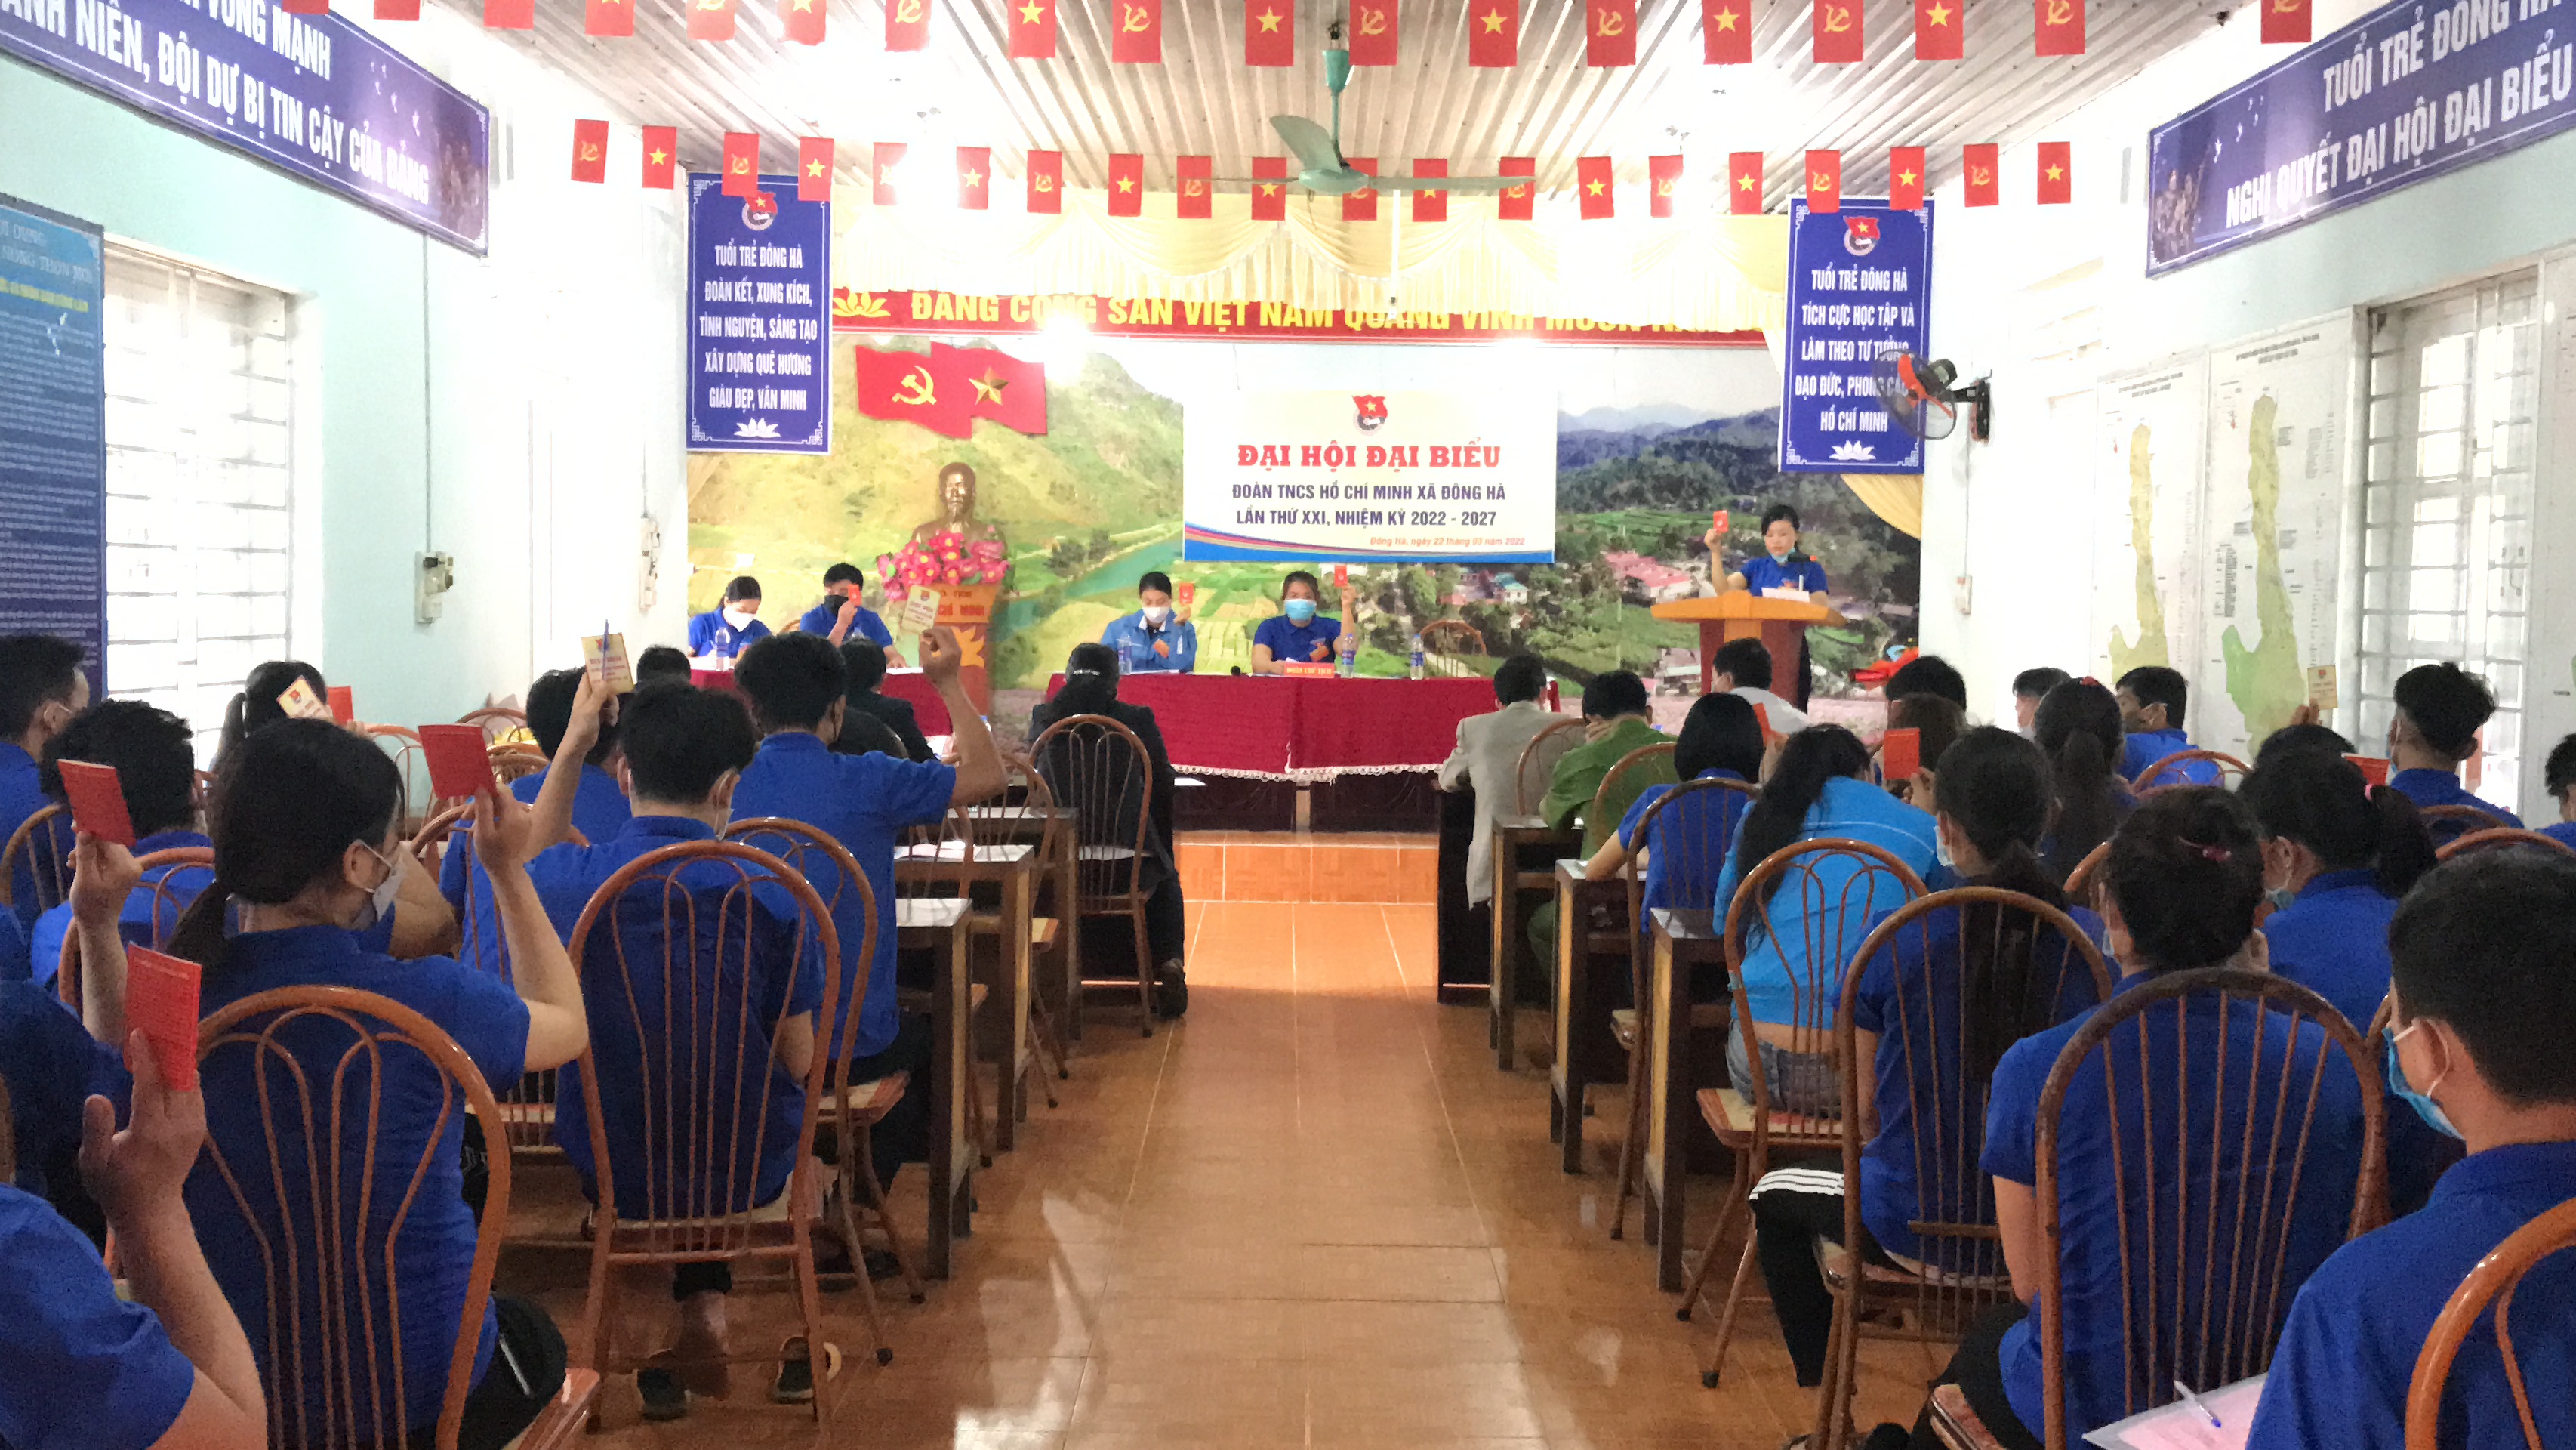 Đại hội Đại biểu Đoàn TNCS Hồ Chí Minh xã Đông Hà lần thứ XXI, nhiệm kỳ 2022-2027